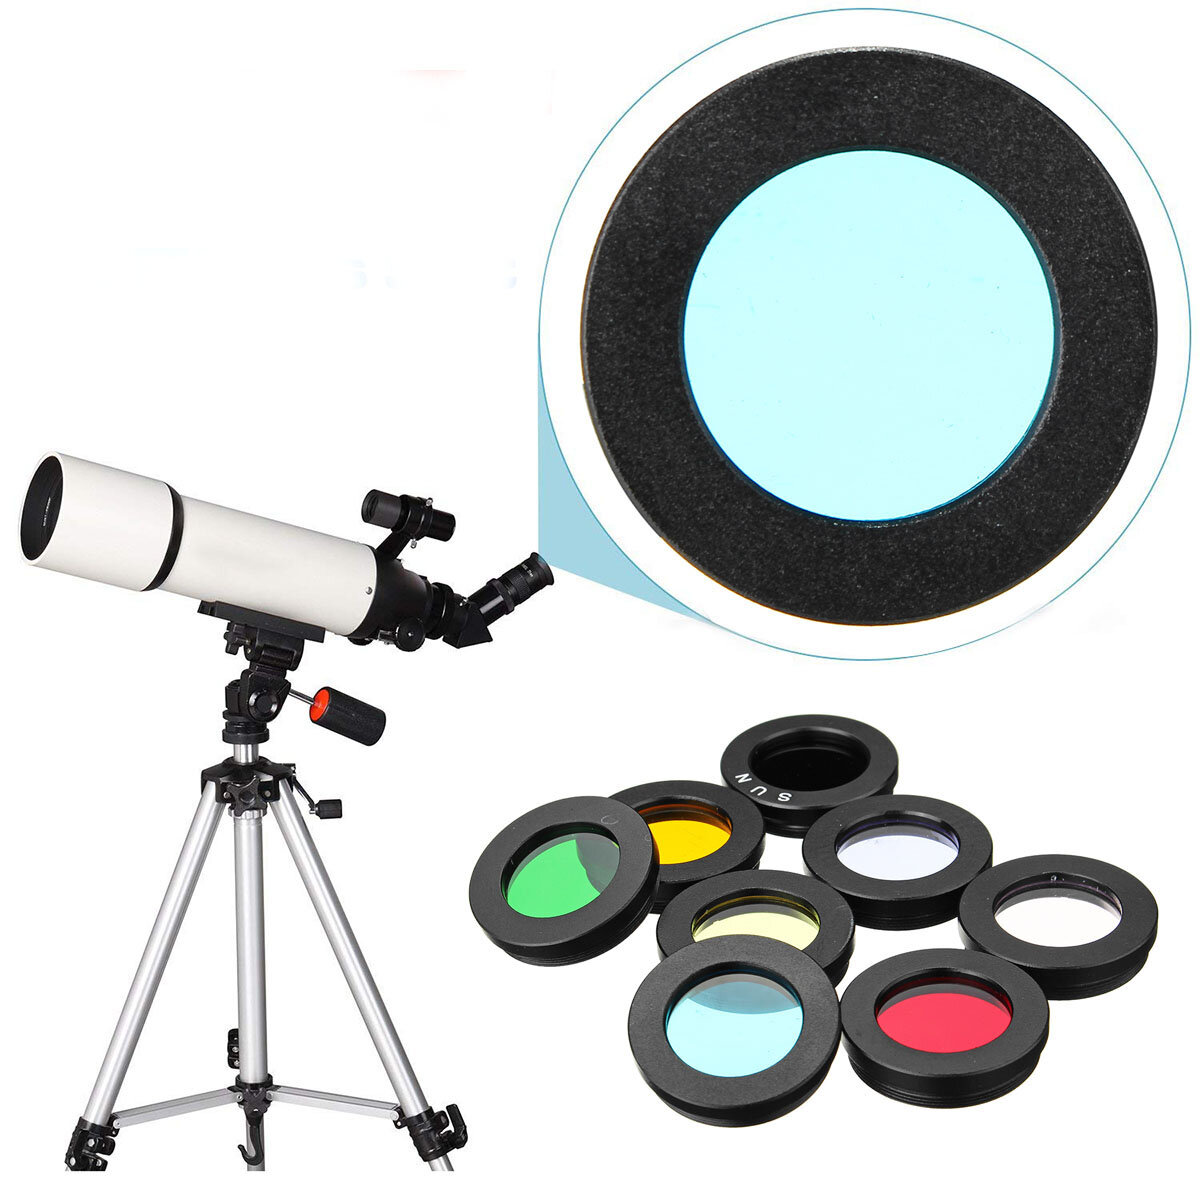 Set van 8 lensfilters van 1,25 inch voor telescoop: nevelfilter, maanfilter, zonnefilter en andere accessoires voor het oculair